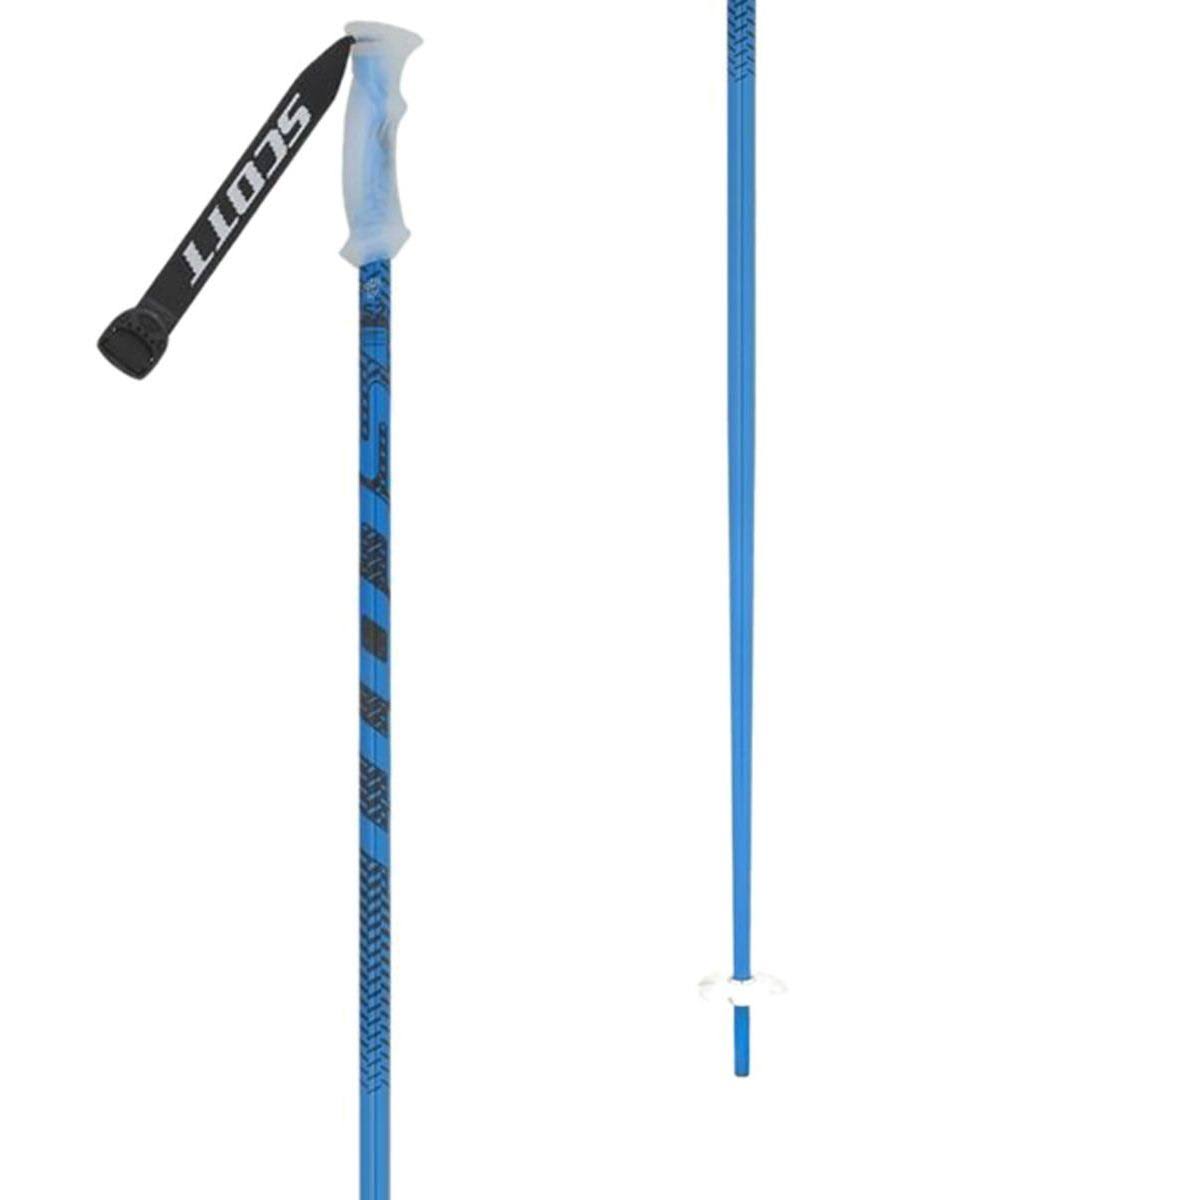 Scott 540 Ski Poles Black/Blue, 140cm